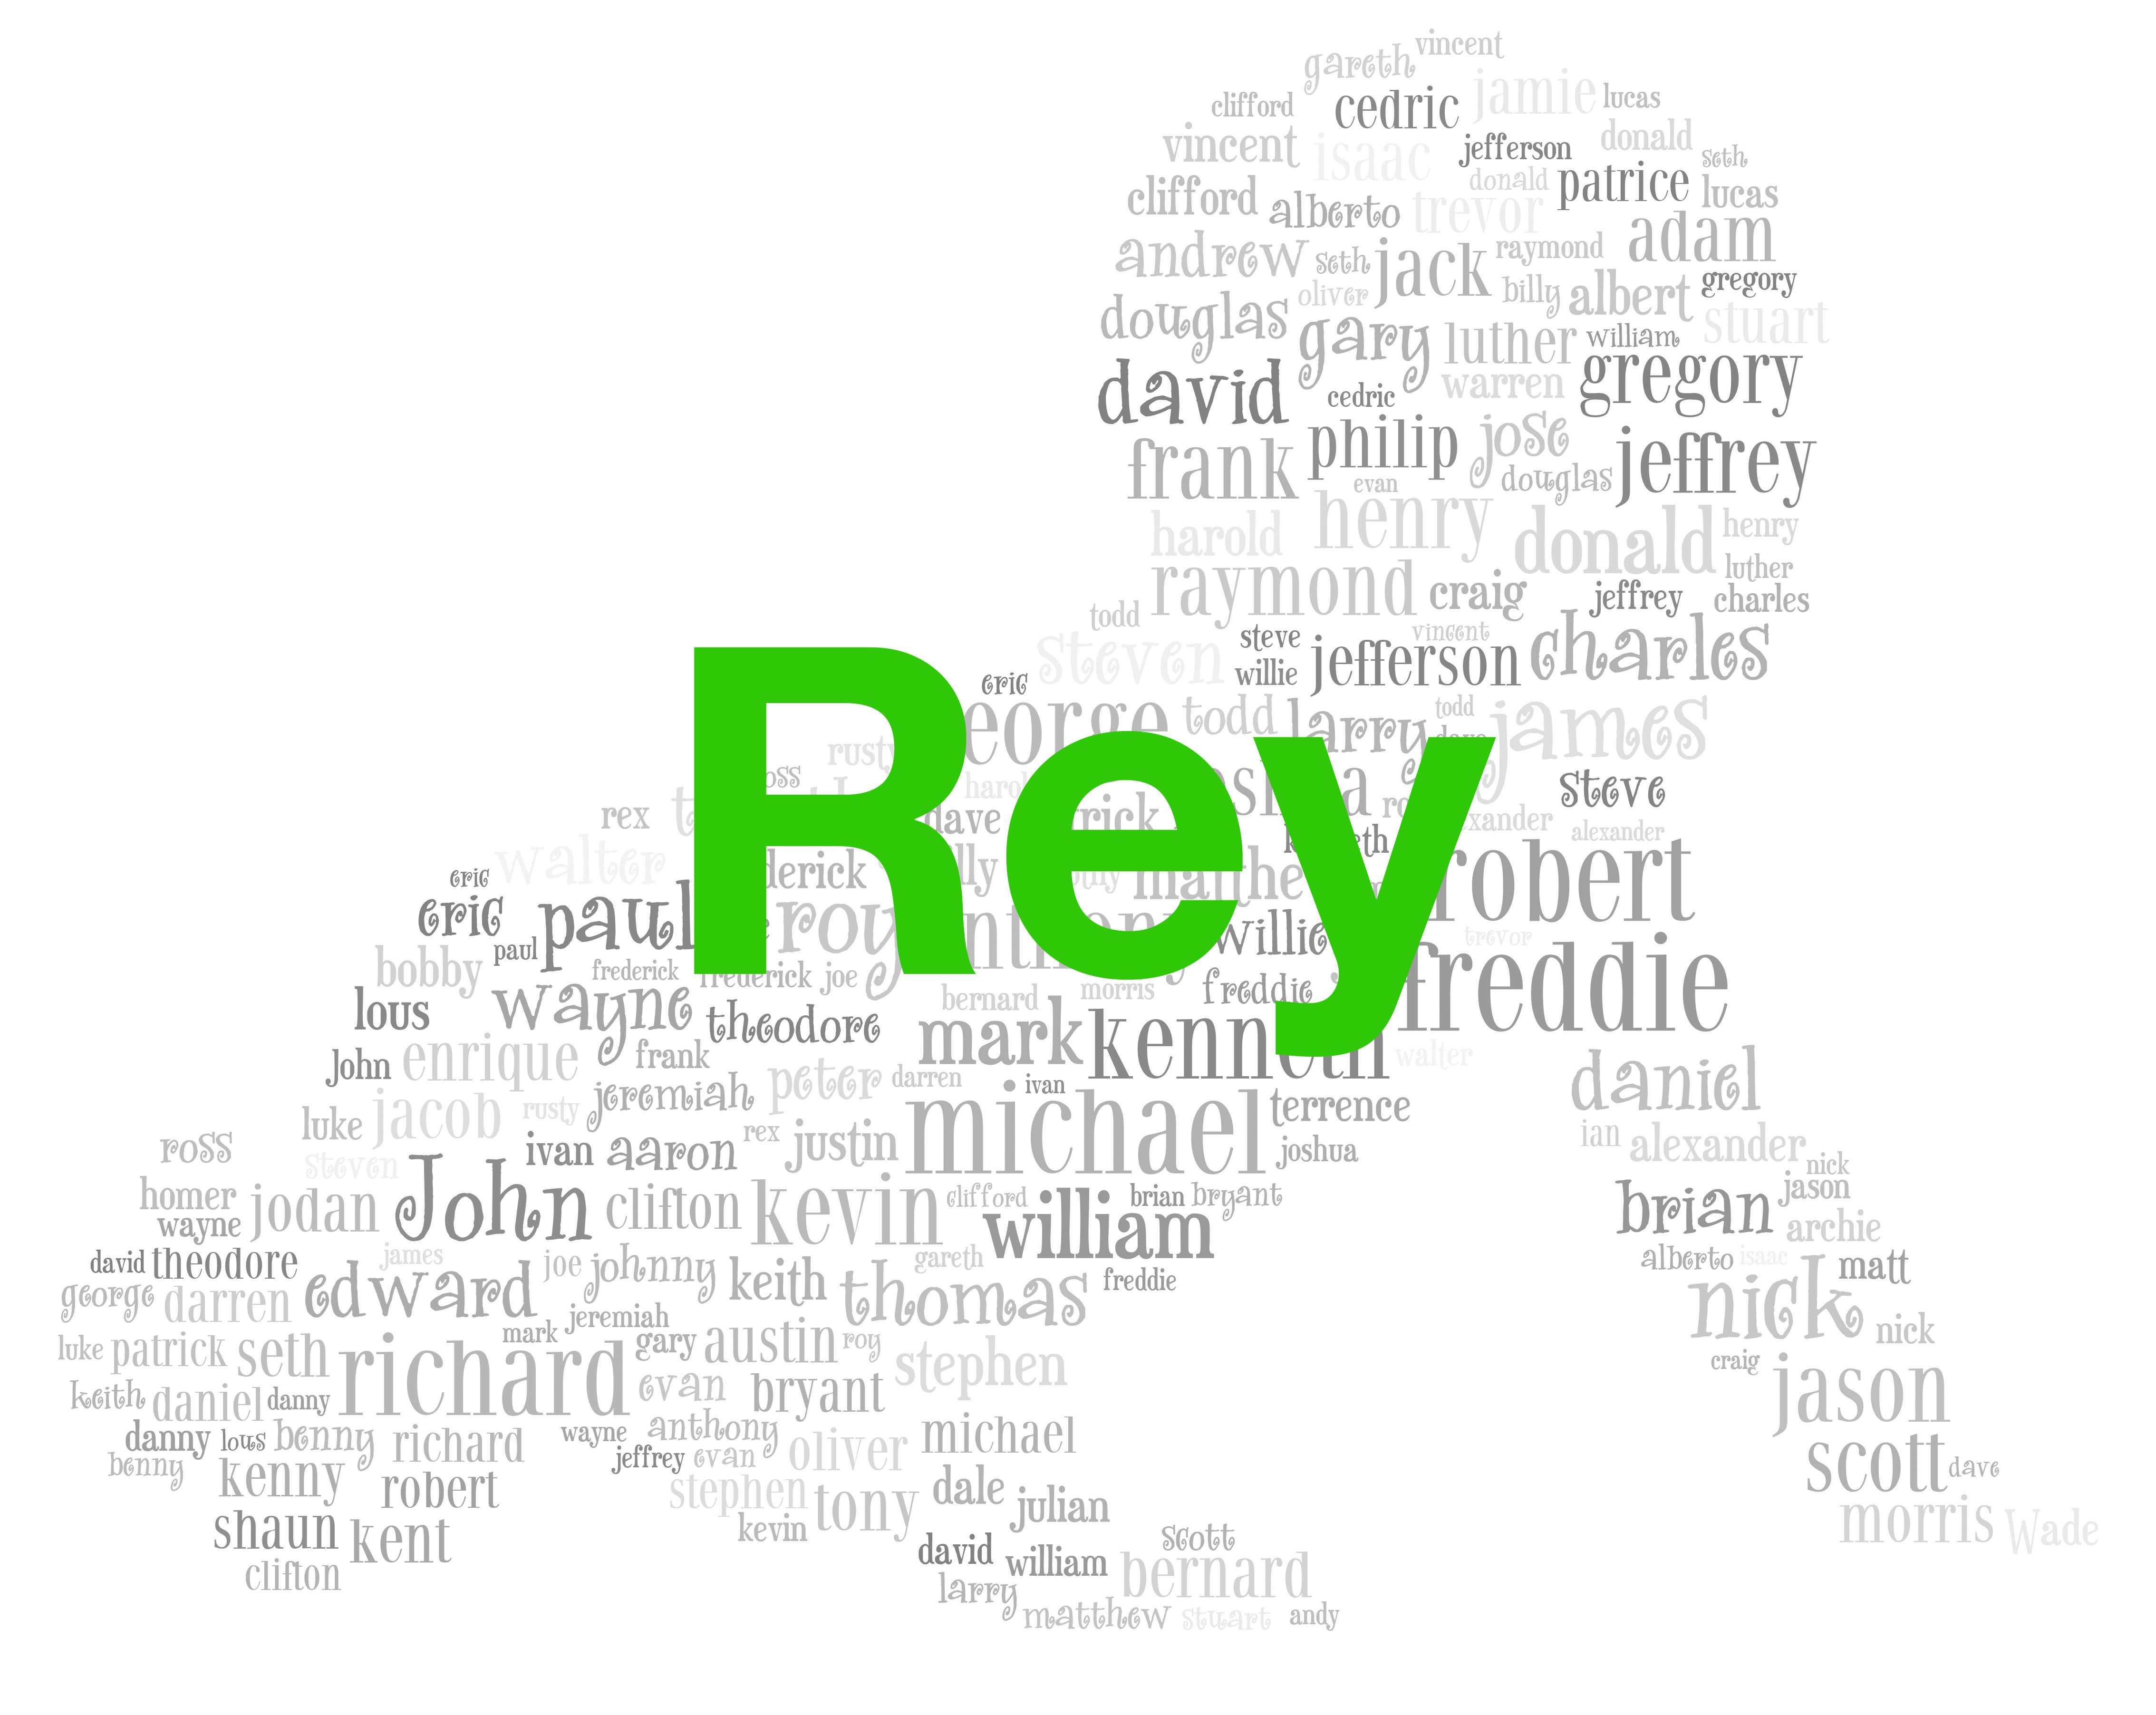 Girls: Rey